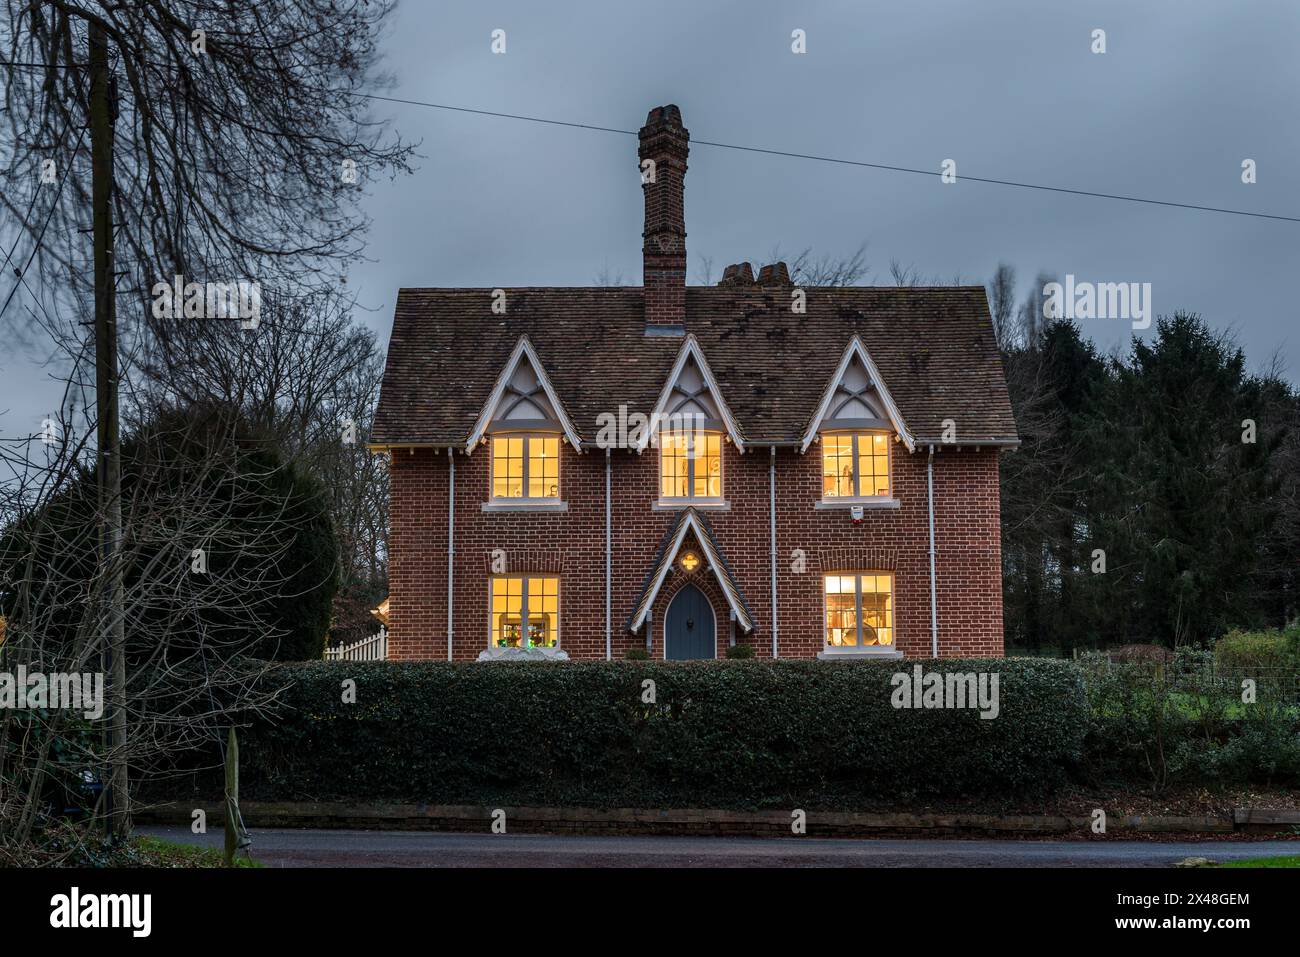 Fenêtres éclairées dans la maison familiale Dorset à Noël, Angleterre, Royaume-Uni Banque D'Images